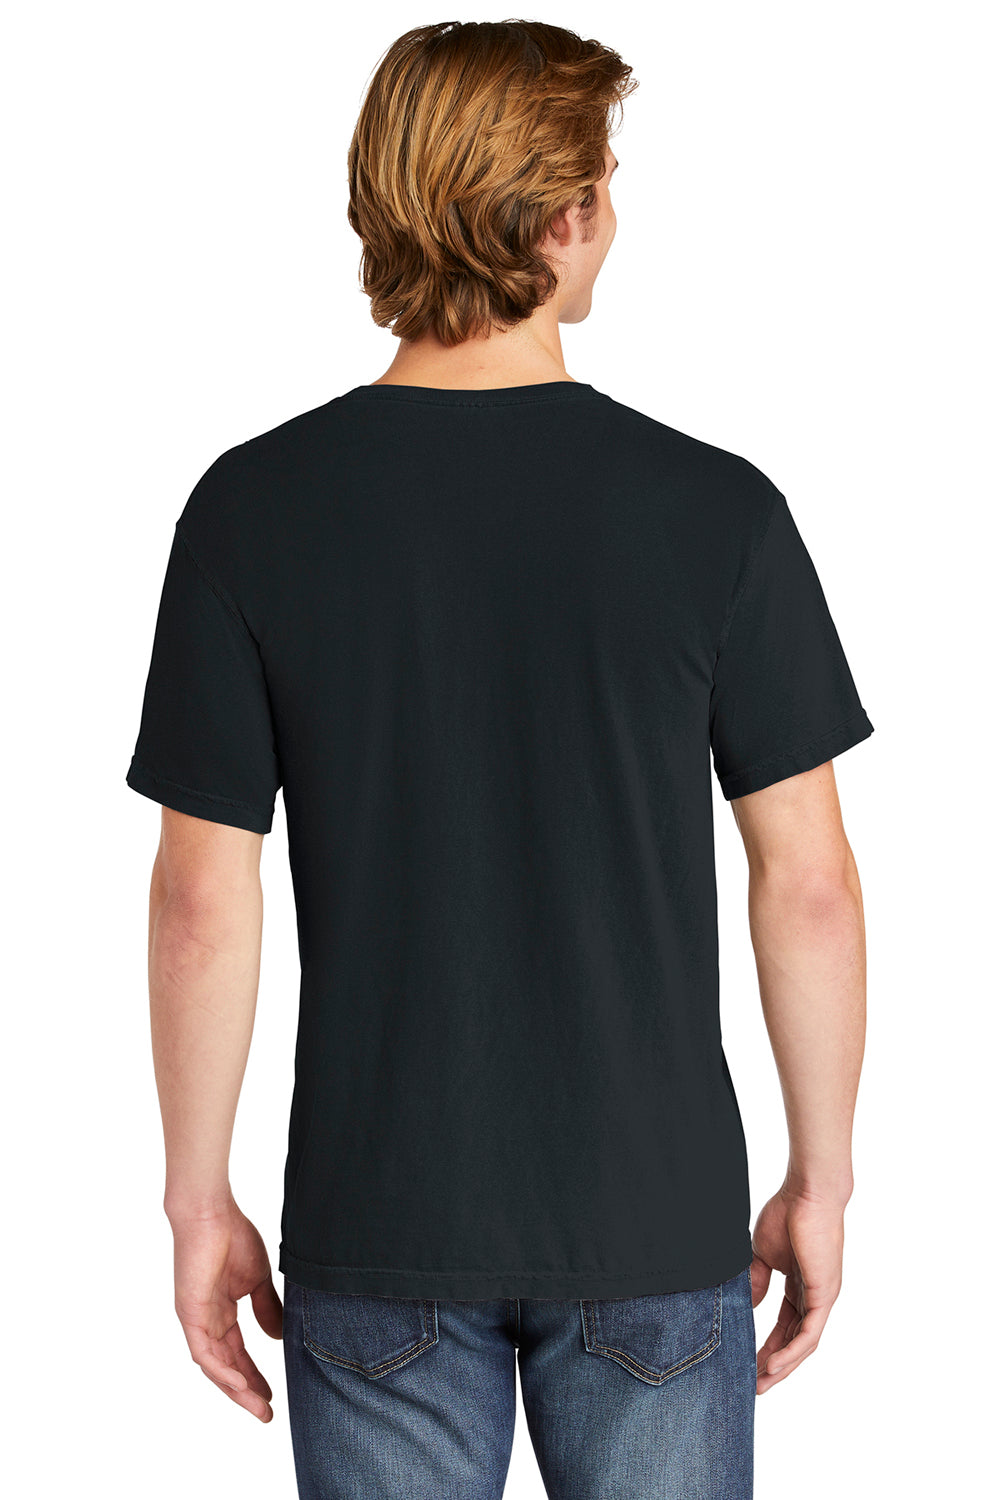 Comfort Colors 6030/6030CC Mens Short Sleeve Crewneck T-Shirt w/ Pocket Black Back